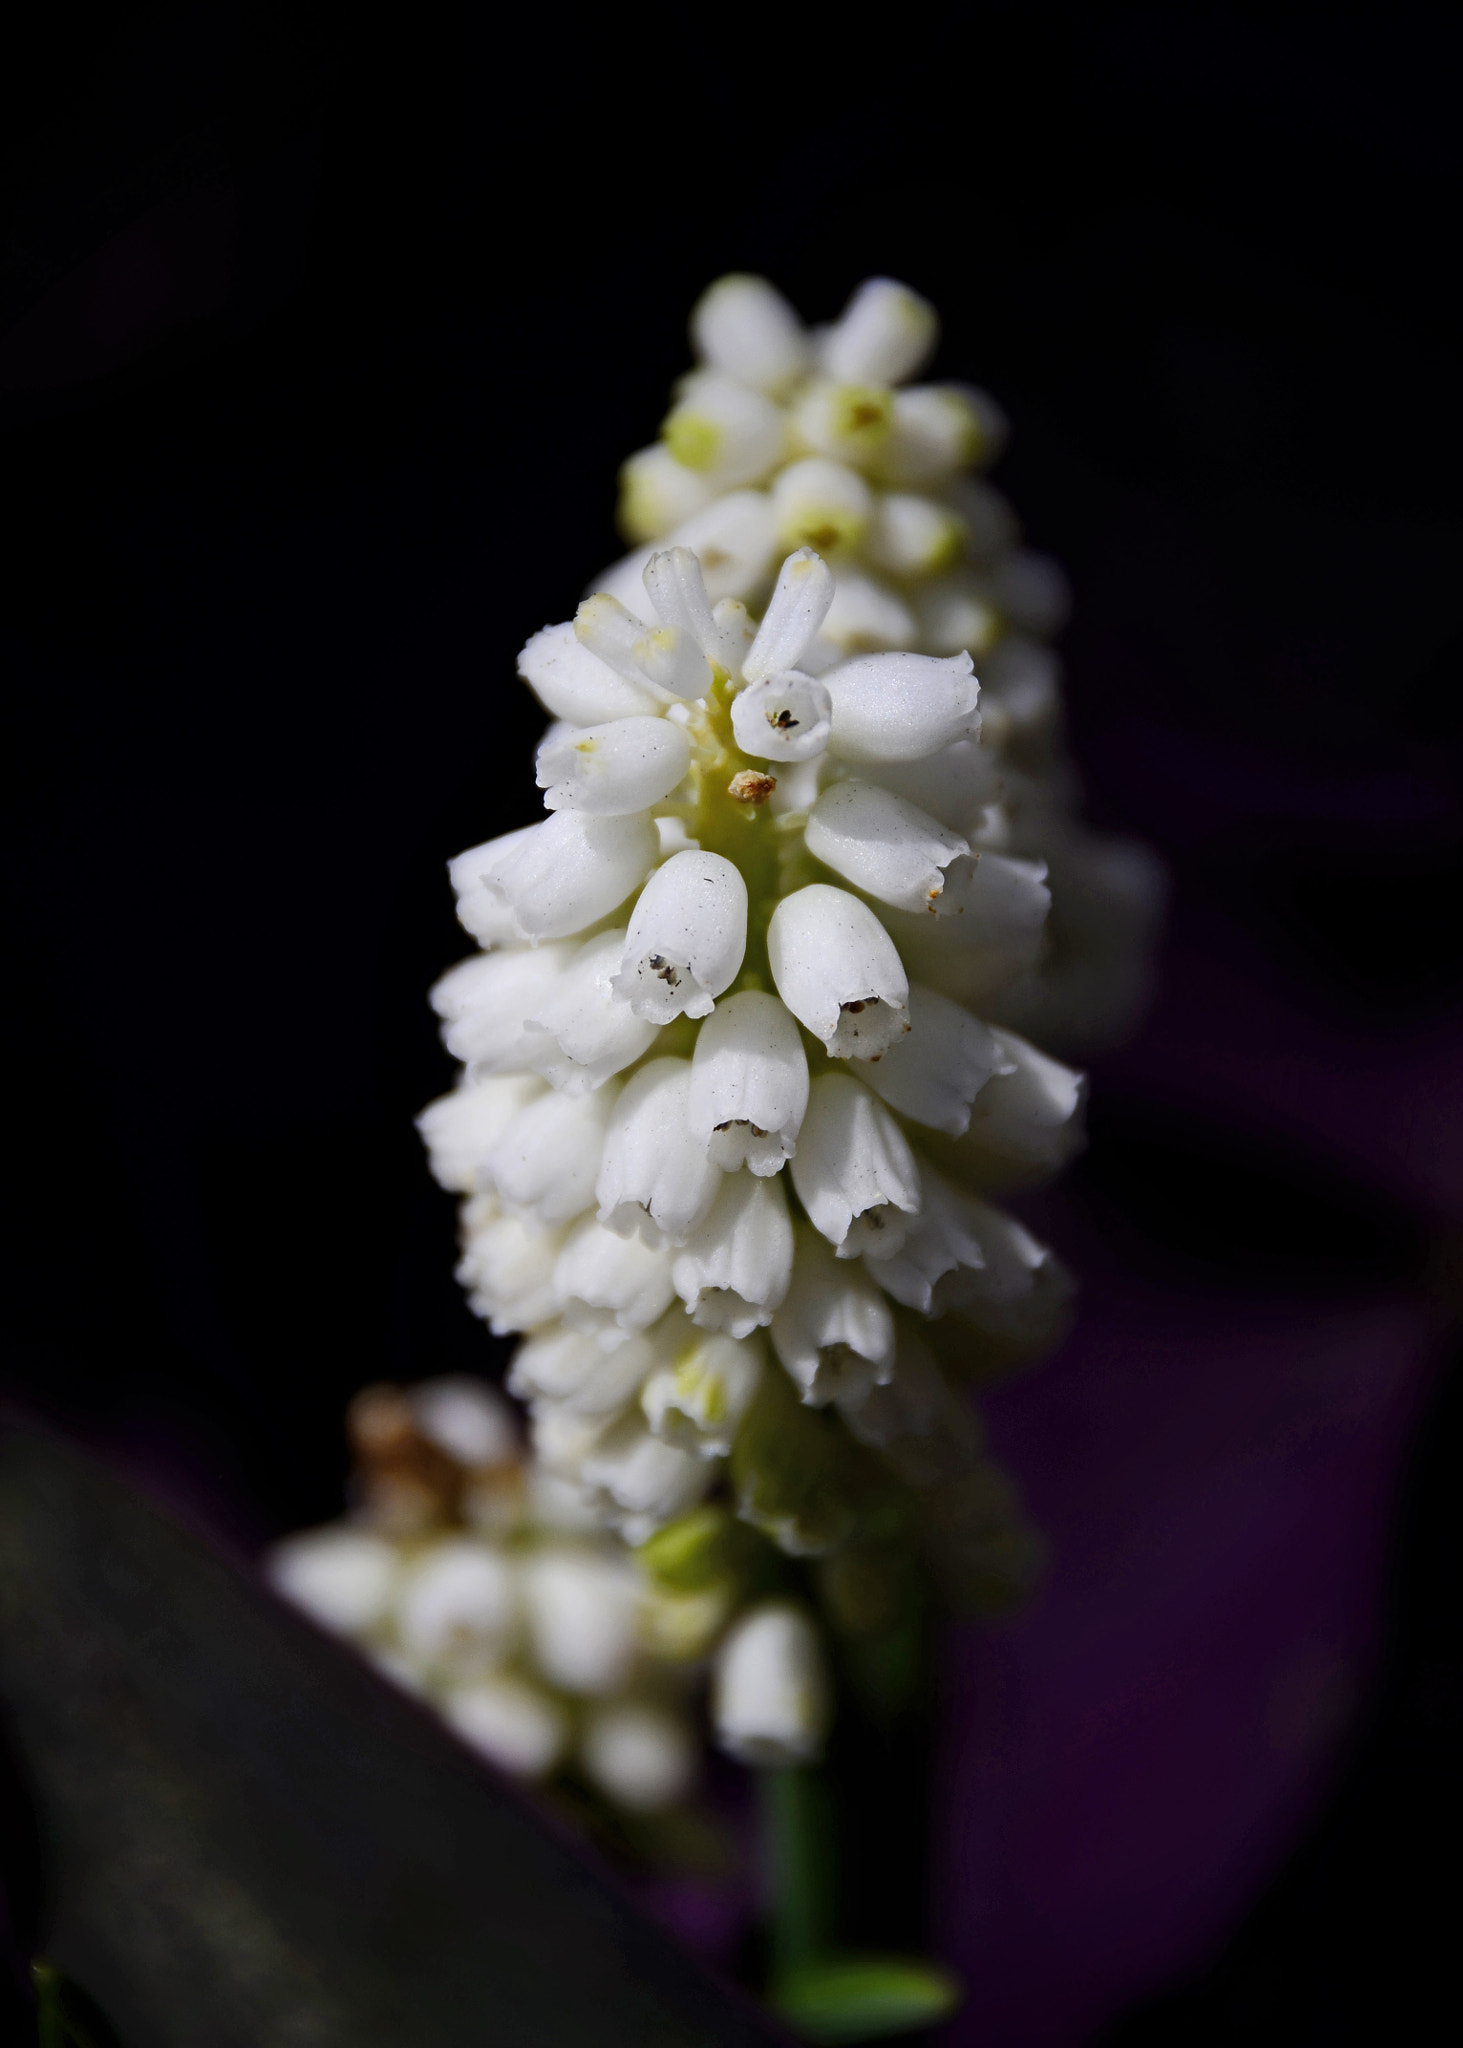 Nikon D7000 + AF Zoom-Nikkor 75-240mm f/4.5-5.6D sample photo. White grape hyacinth photography